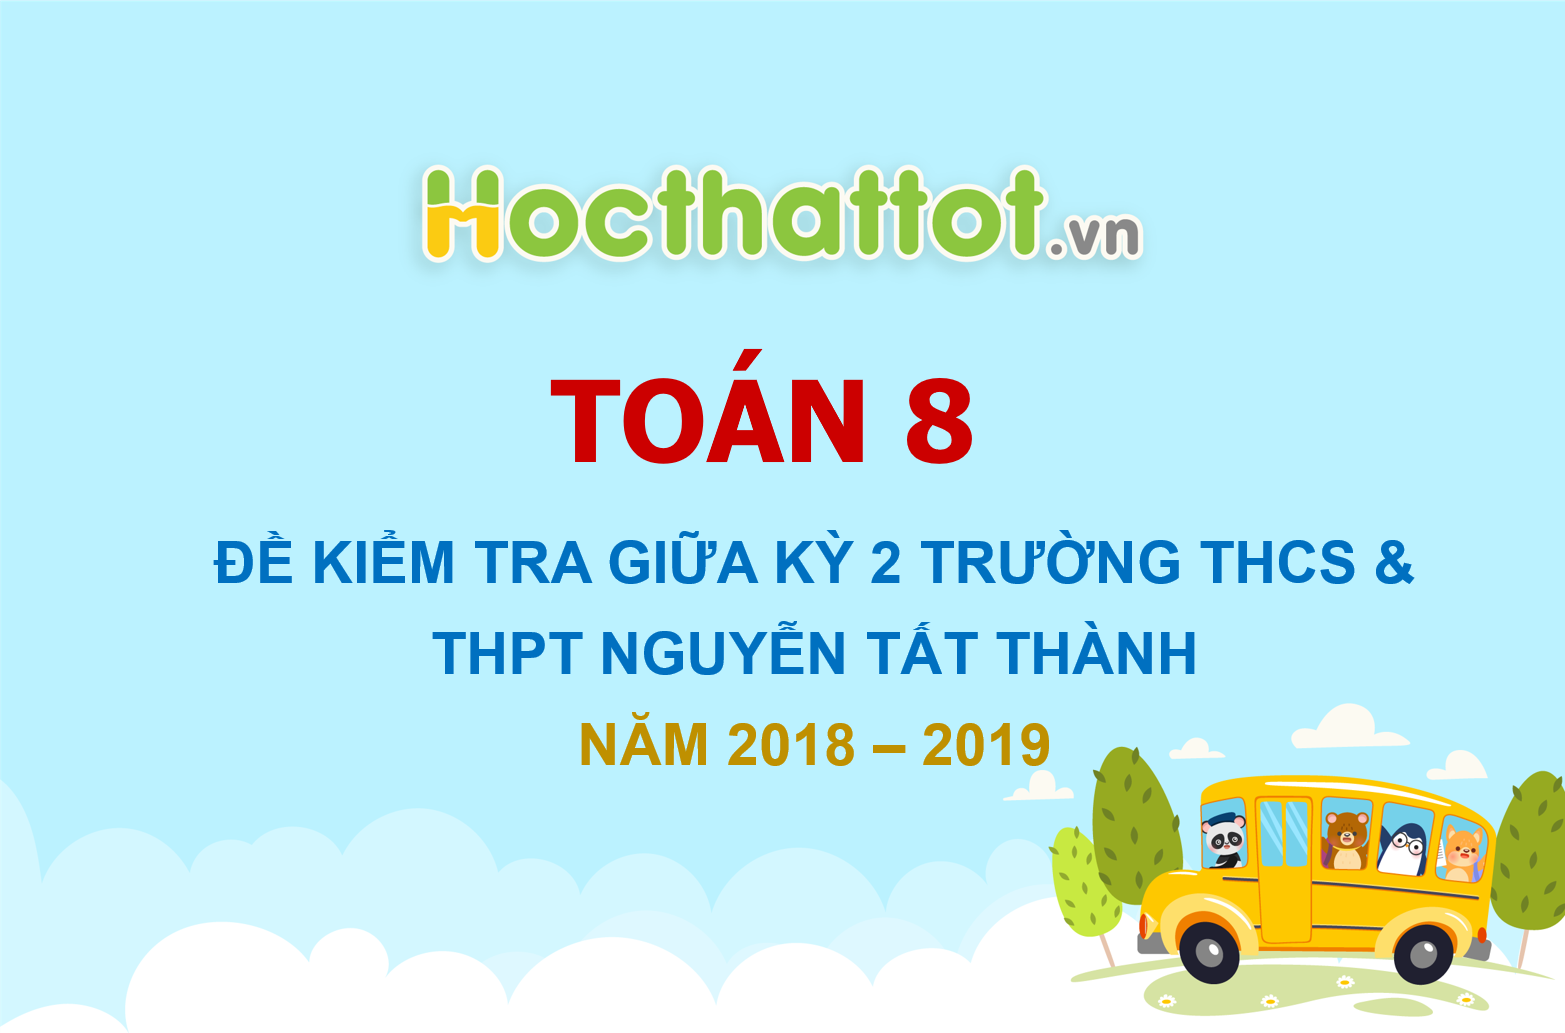 de-kiem-tra-giua-ki-2-toan-8-nam-2018-2019-truong-thcs-thpt- nguyen-tat-thanh